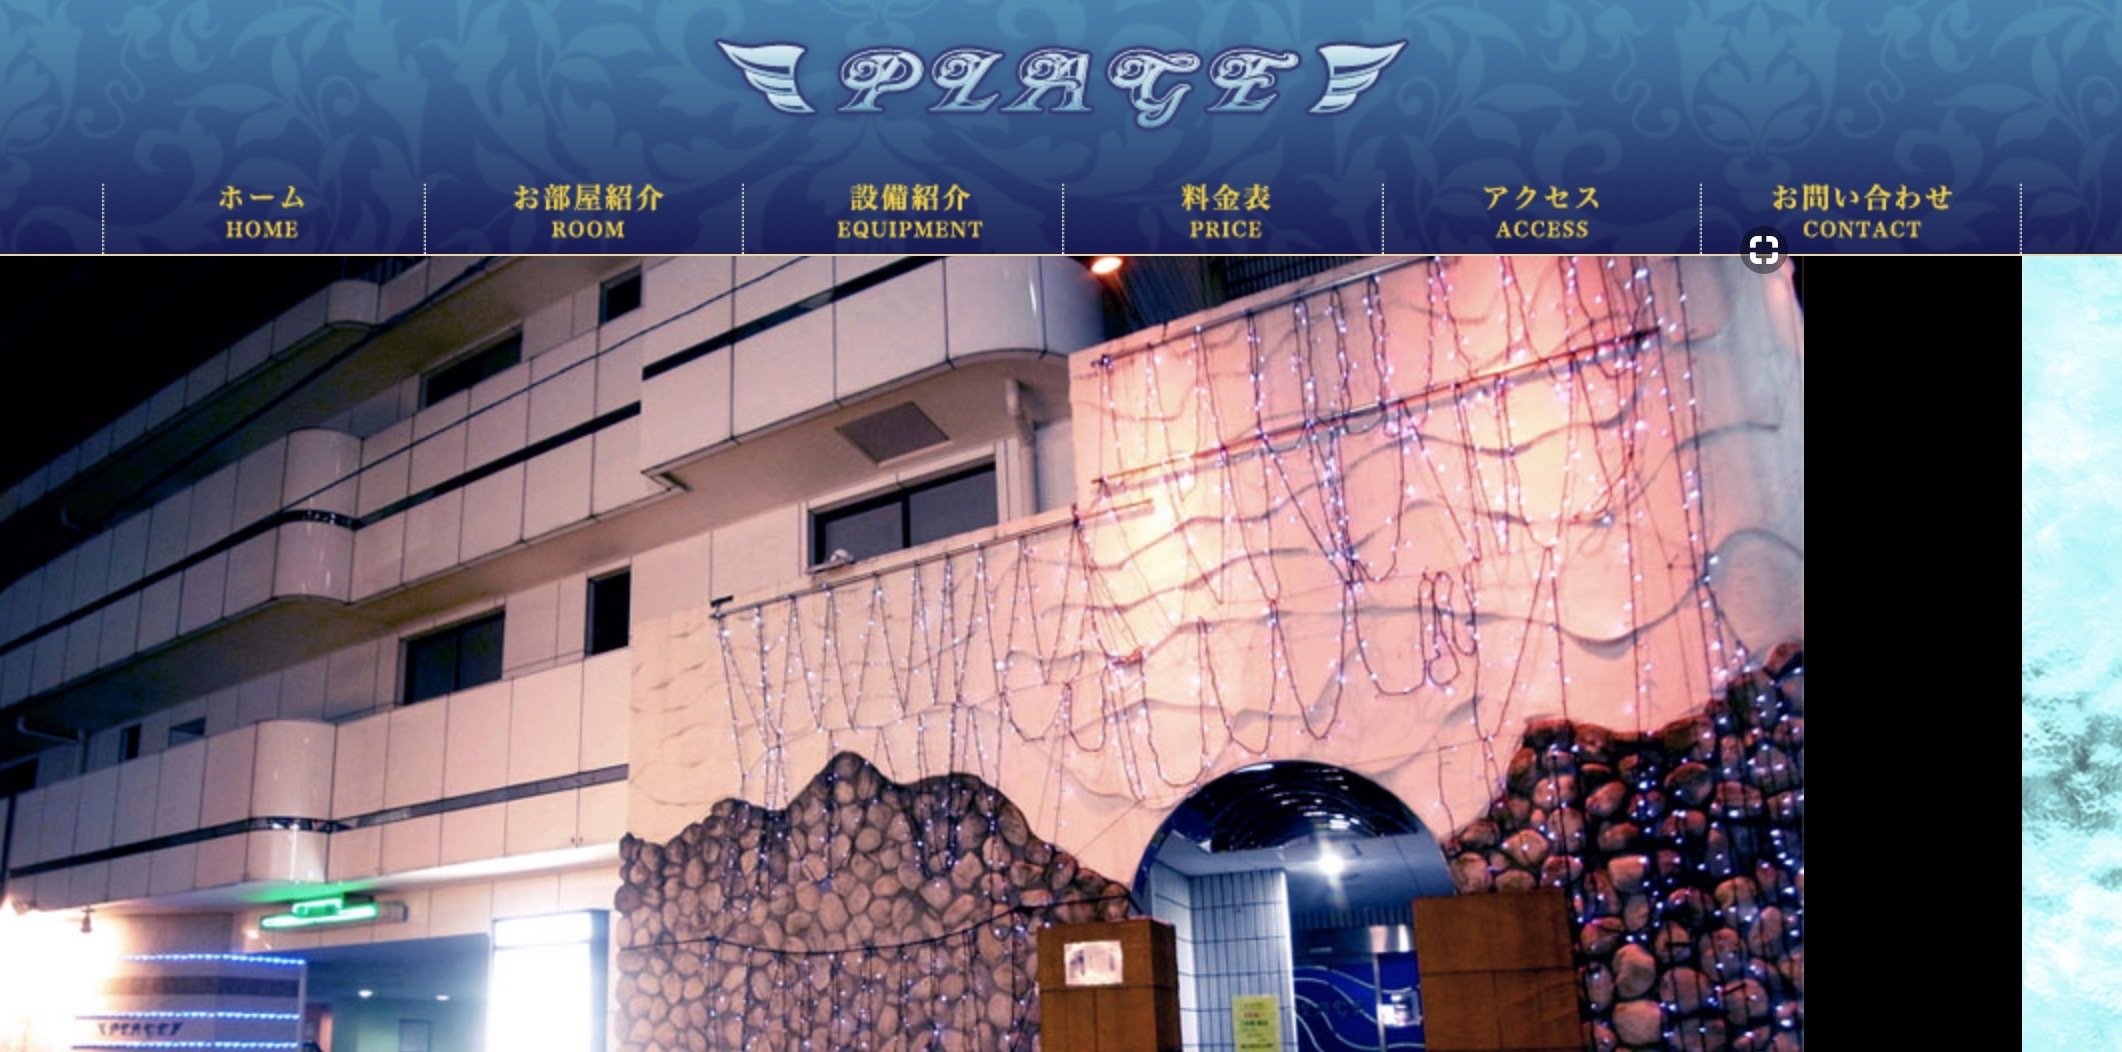 横浜のラブホテル Plage プラージュ を調査 料金 アクセス 客室画像 クチコミ 予約情報などについてまとめてみました ラブホラボ